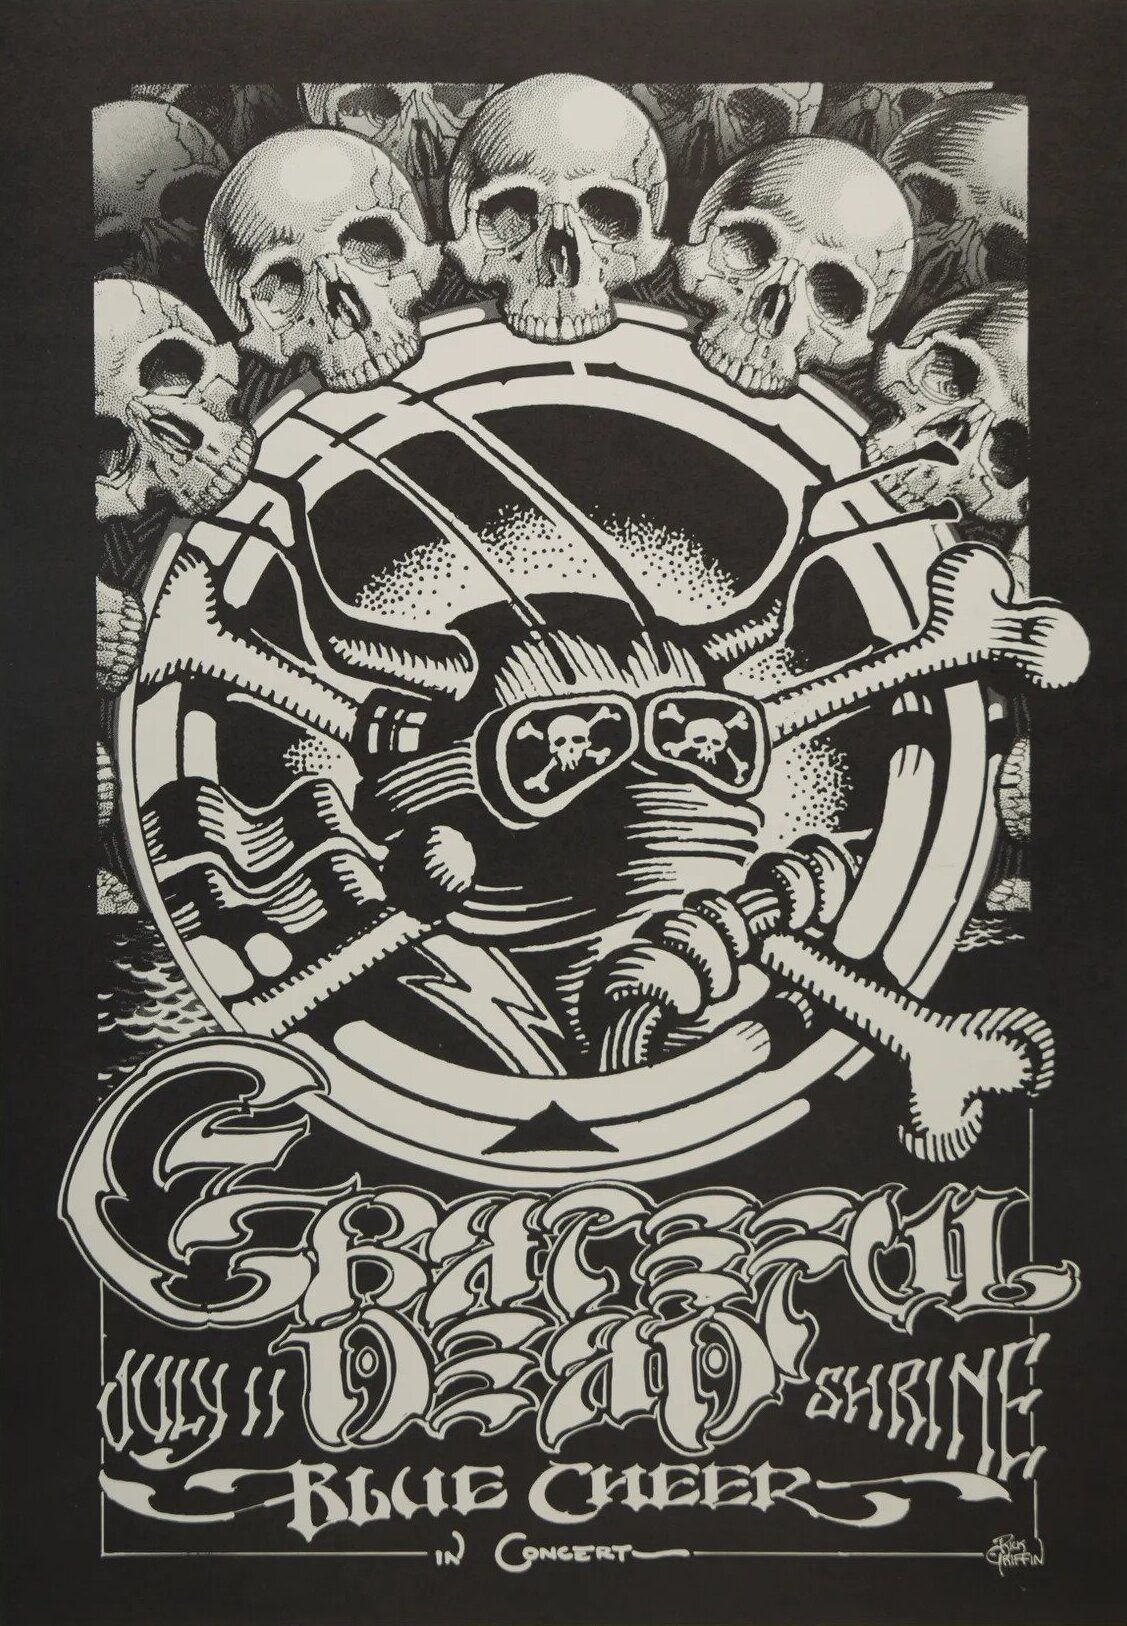 Grateful Dead Shrine Auditorium 1968 Concert Poster